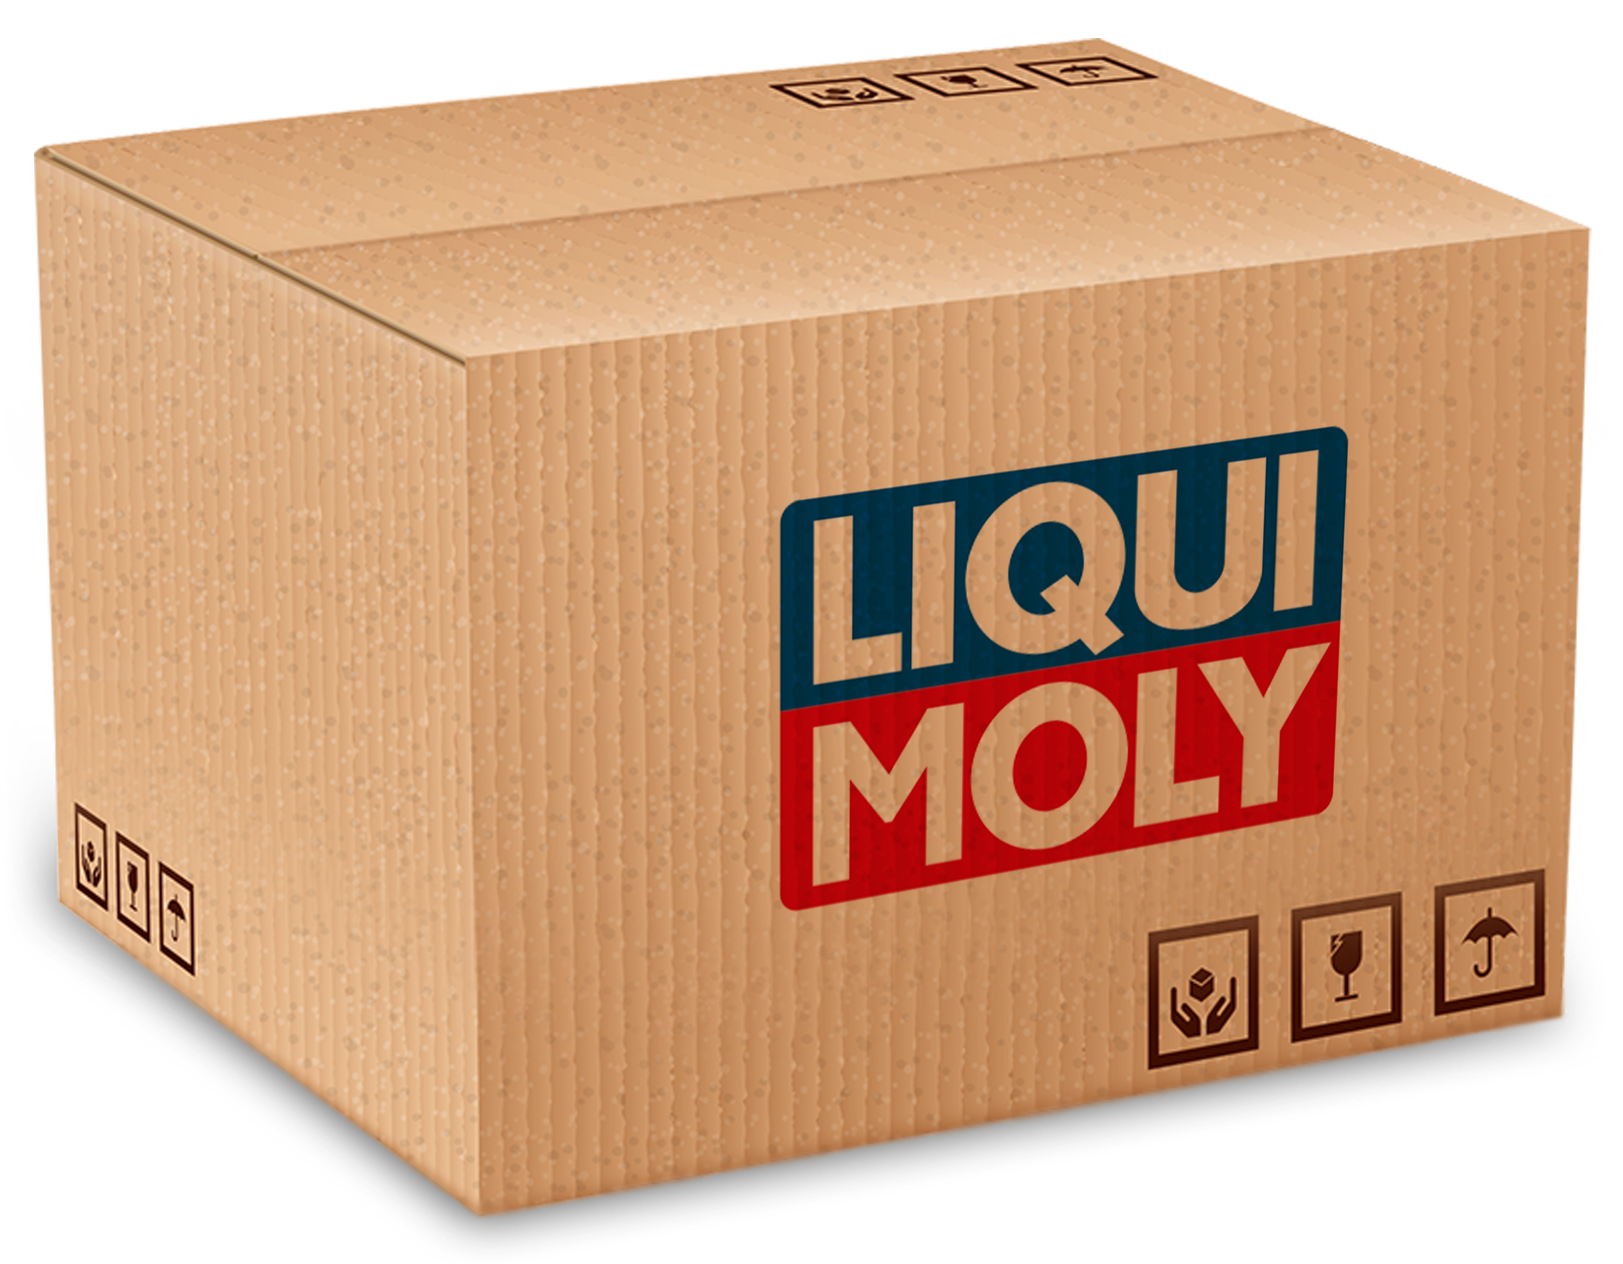 LM2538-12 Liqui Moly Molygen SAE 15W-50 wordt aanbevolen voor benzine- en gasmotoren met inbegrip van motoren met turbocompressoren en katalysatoren.